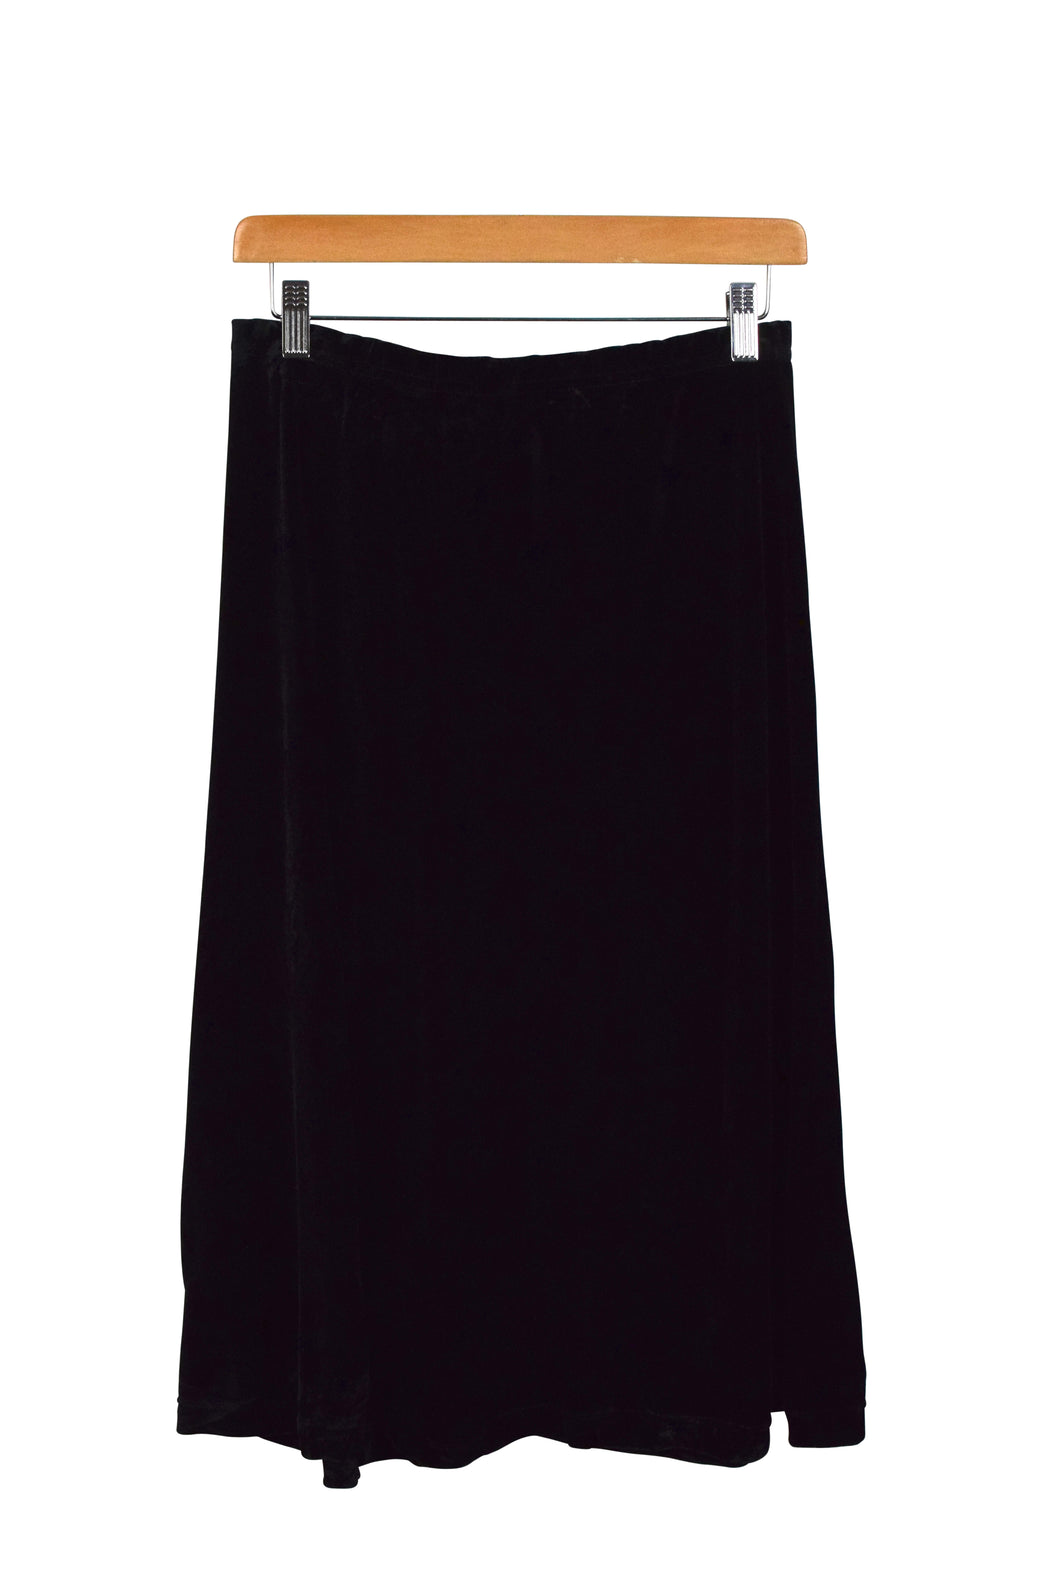 Worthington brand Velvet Skirt